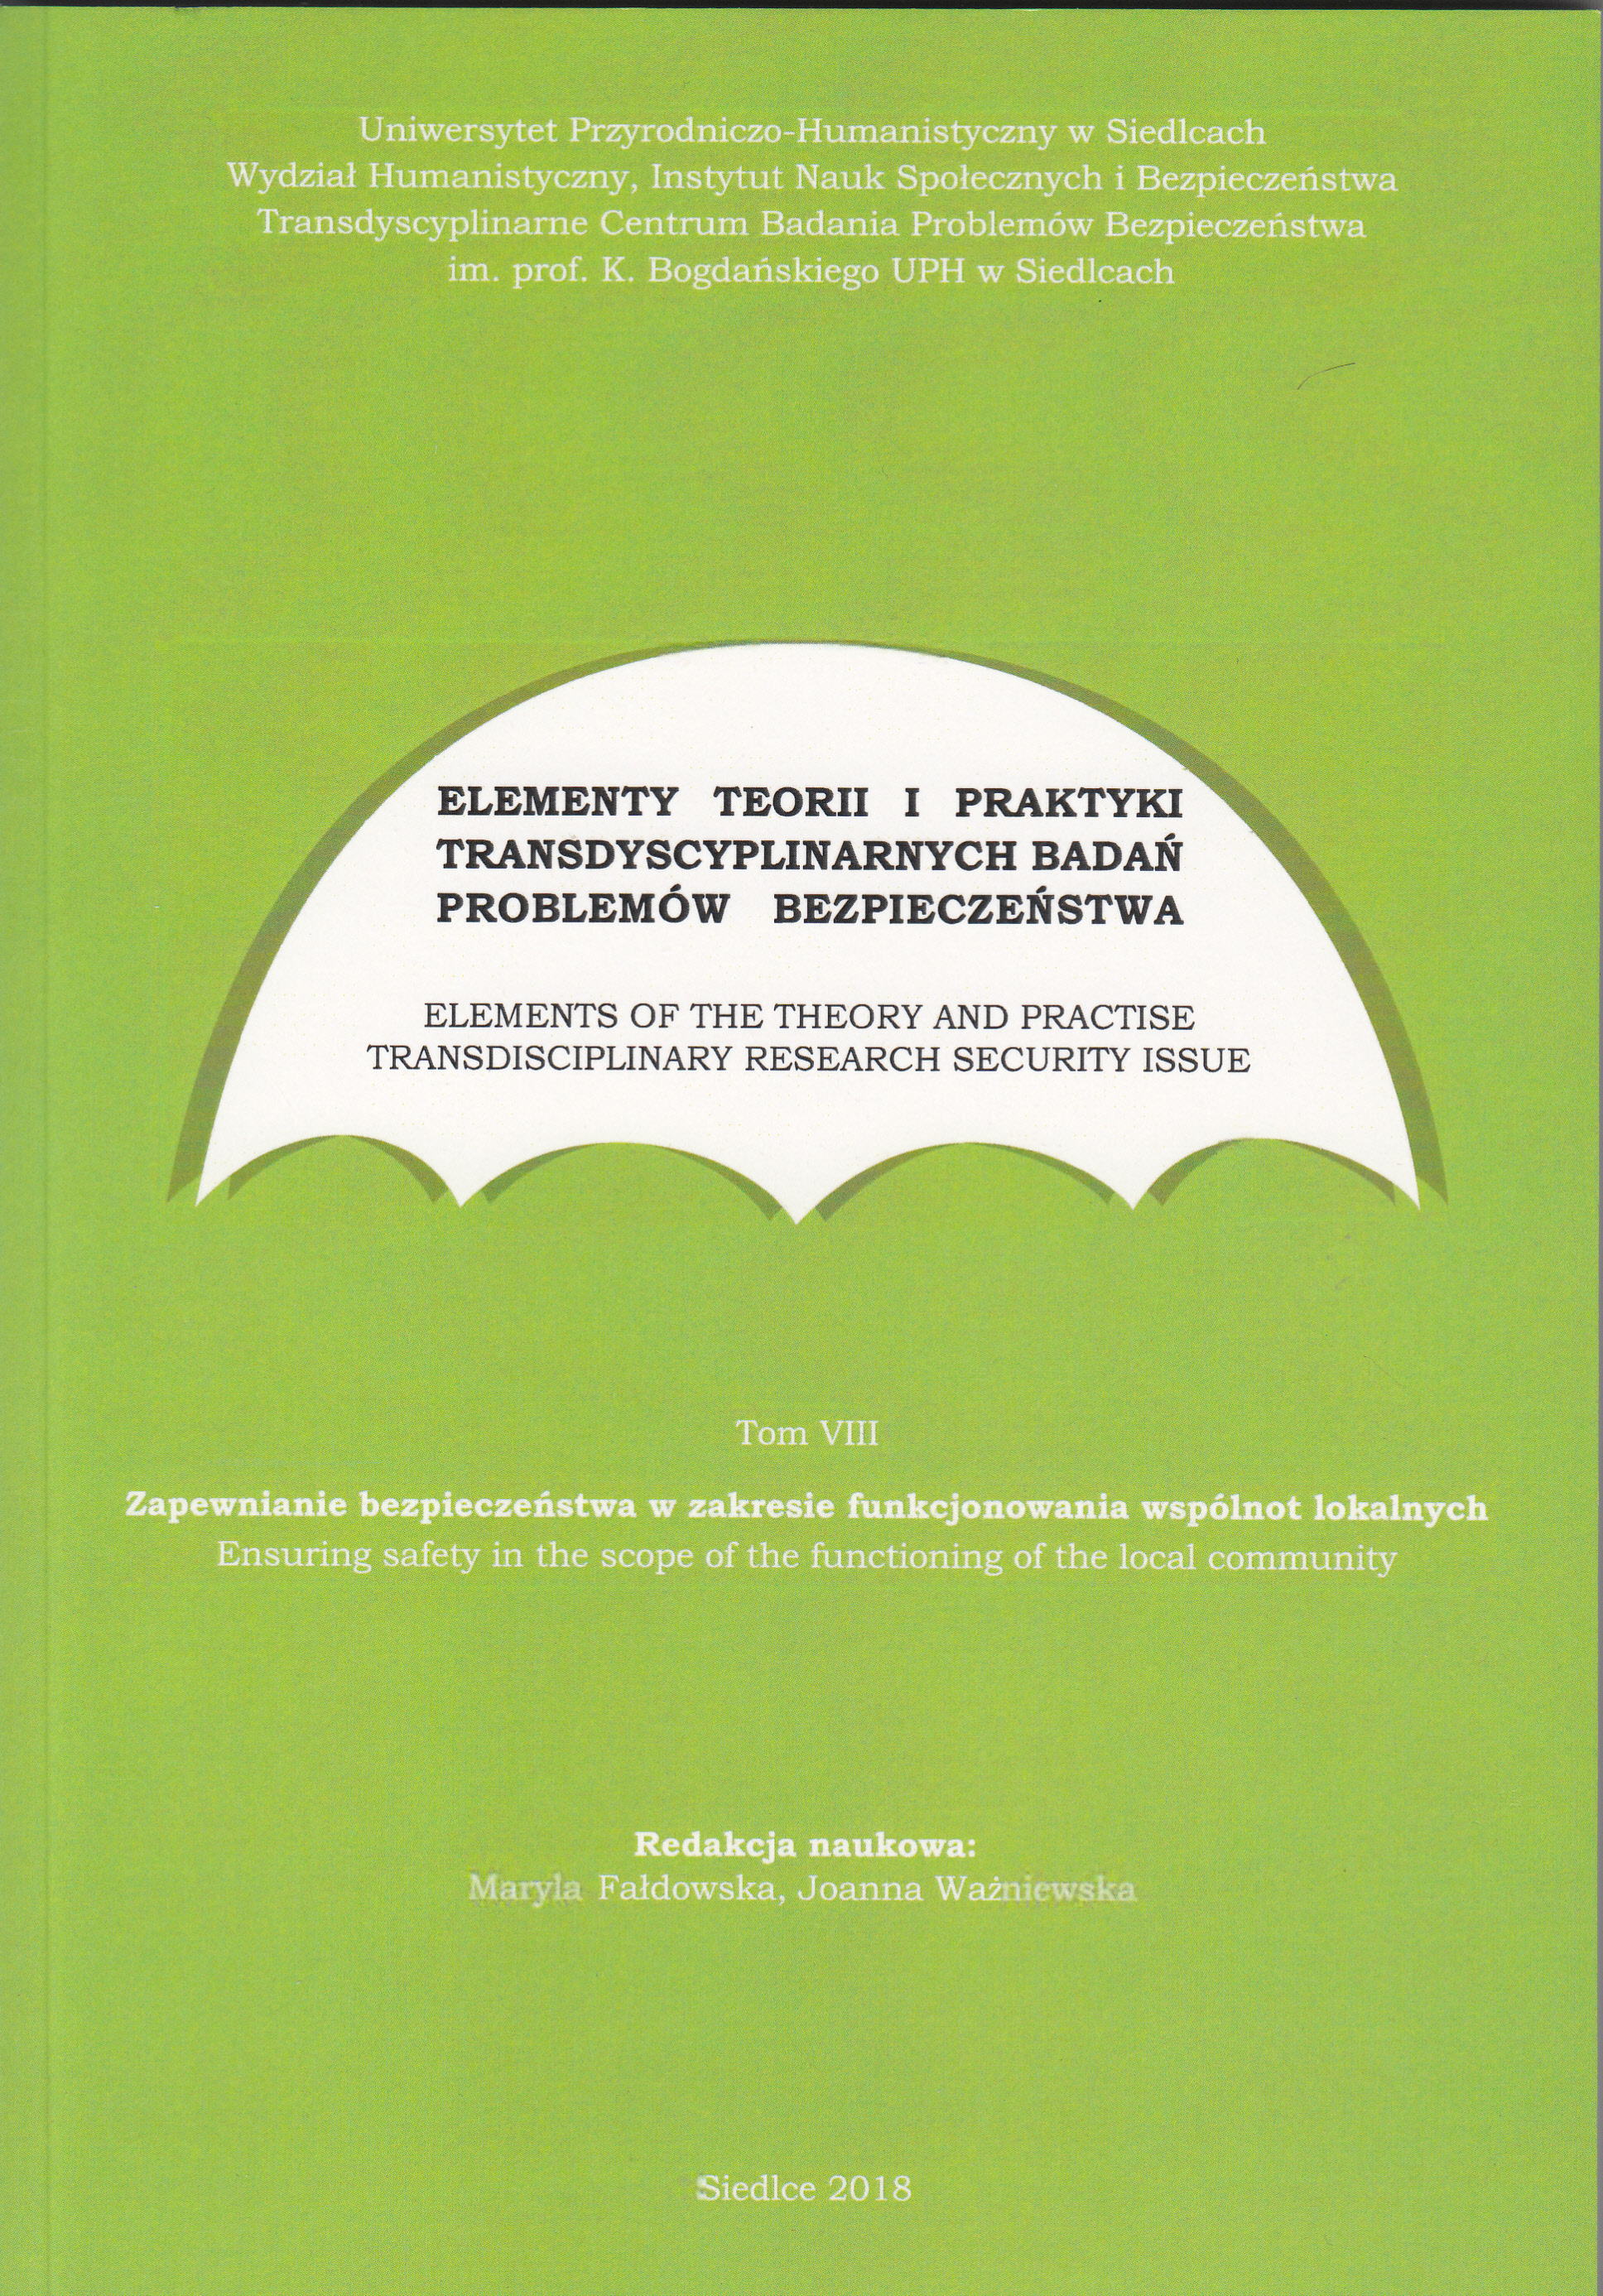 Elementy teorii i praktyki transdyscyplinarnych badań problemów bezpieczeństwa – tom VIII